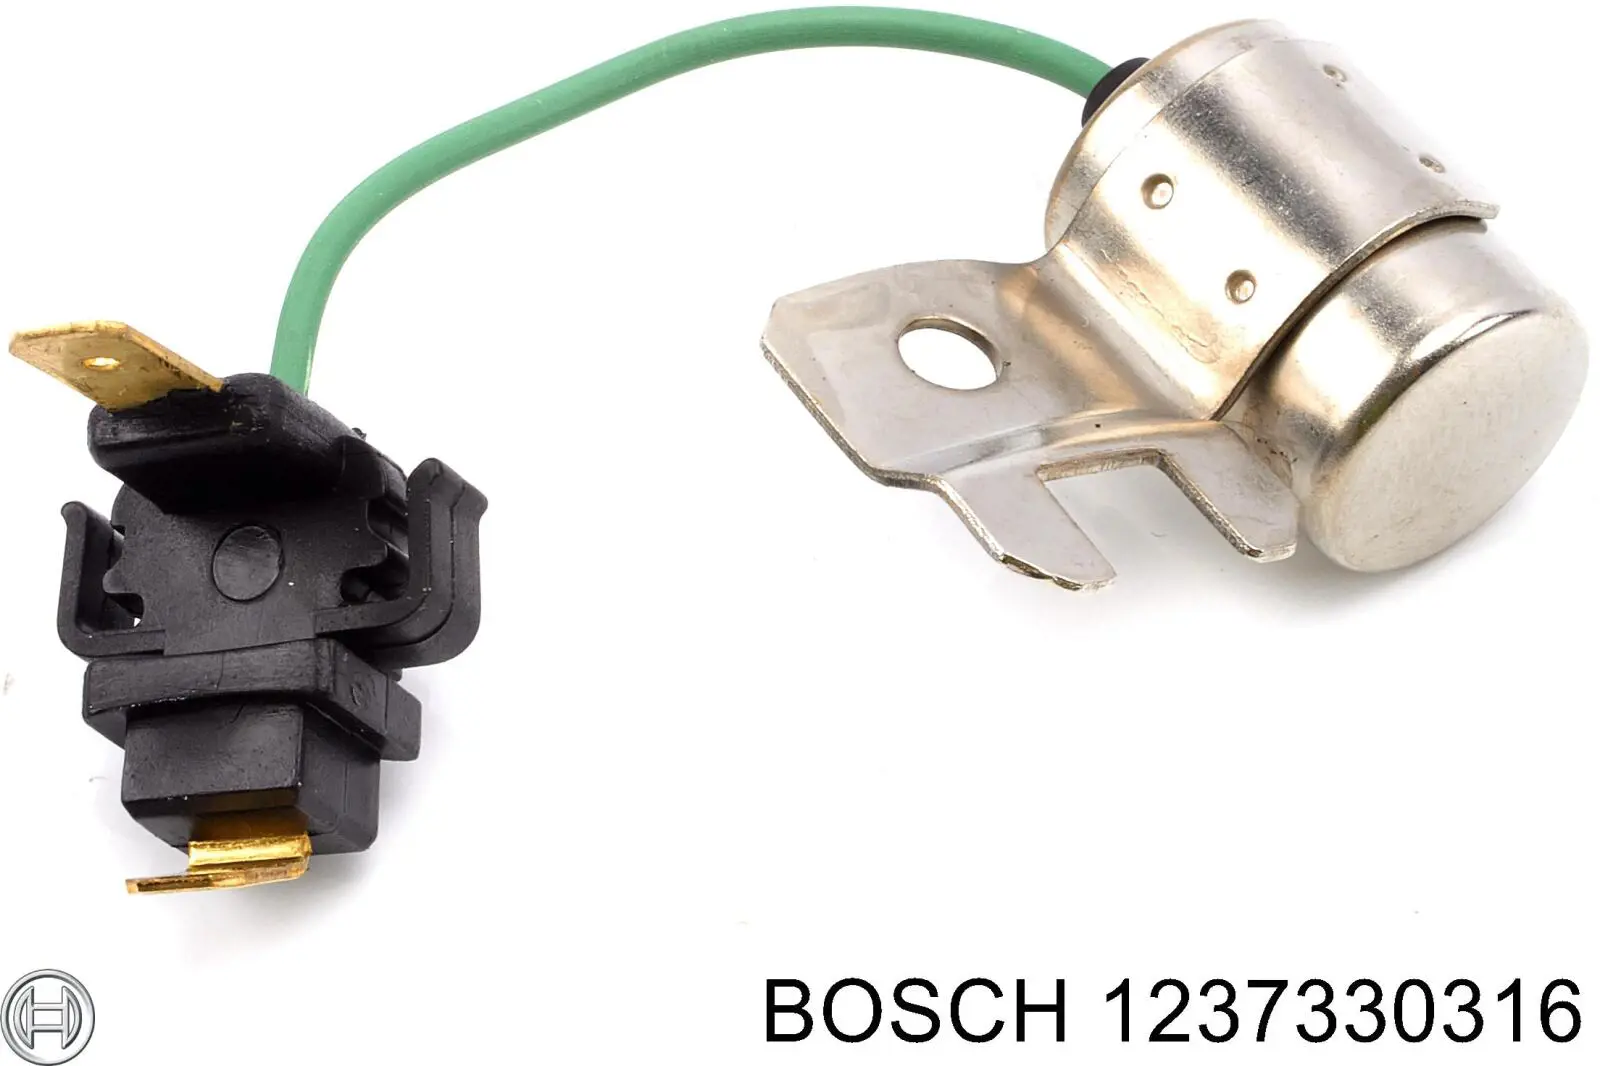 1237330316 Bosch 